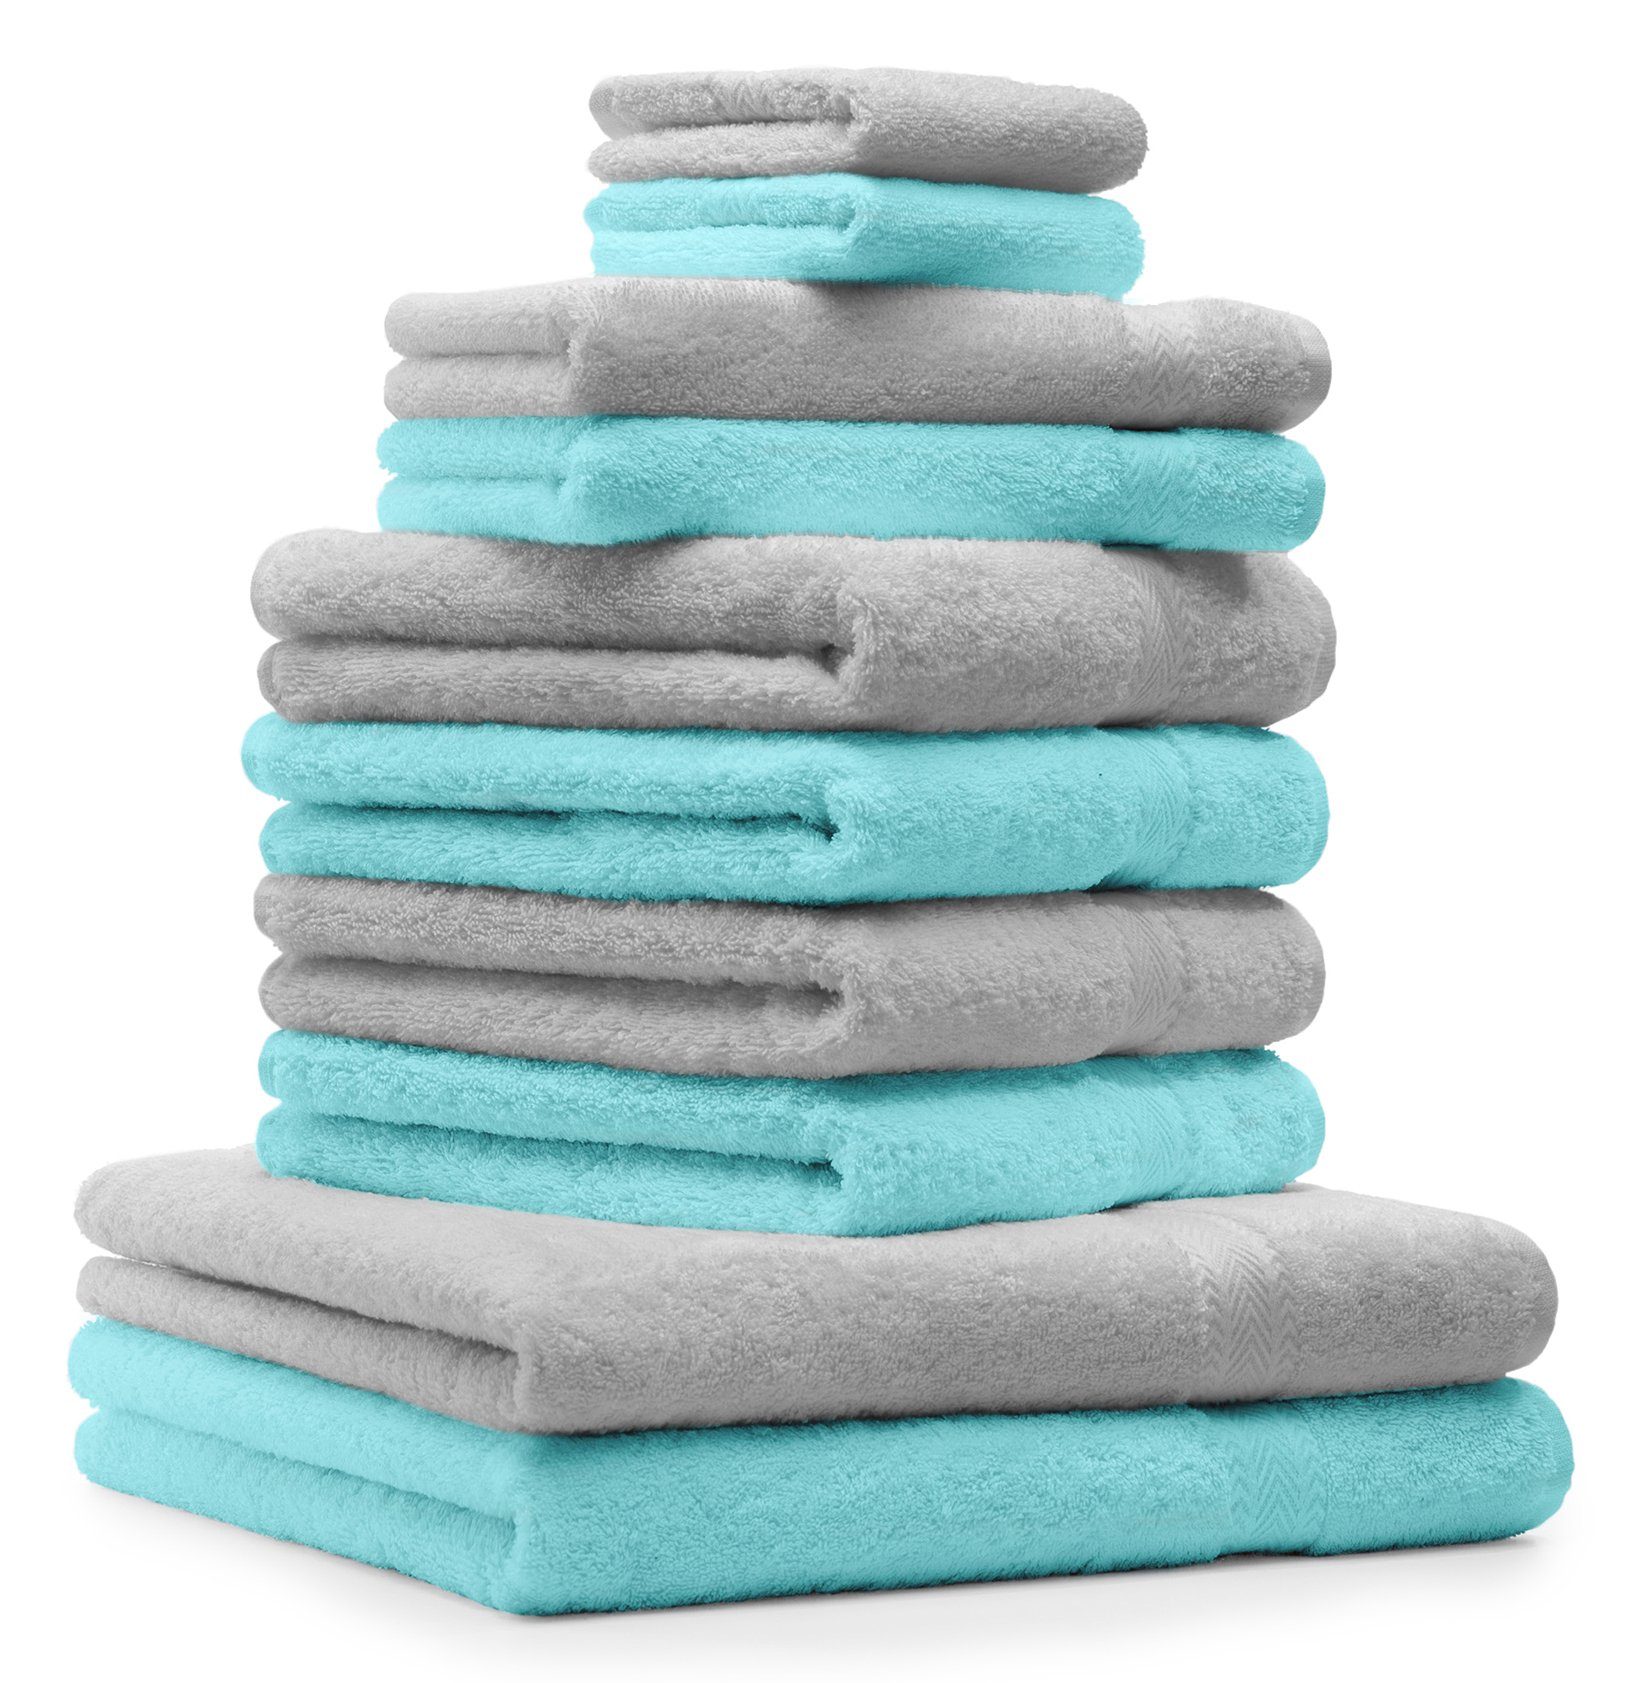 Betz Handtuch Set 10-TLG. Handtuch-Set Premium 100% Baumwolle 2 Duschtücher 4 Handtücher 2 Gästetücher 2 Waschhandschuhe Farbe Silber Grau & Türkis, 100% Baumwolle